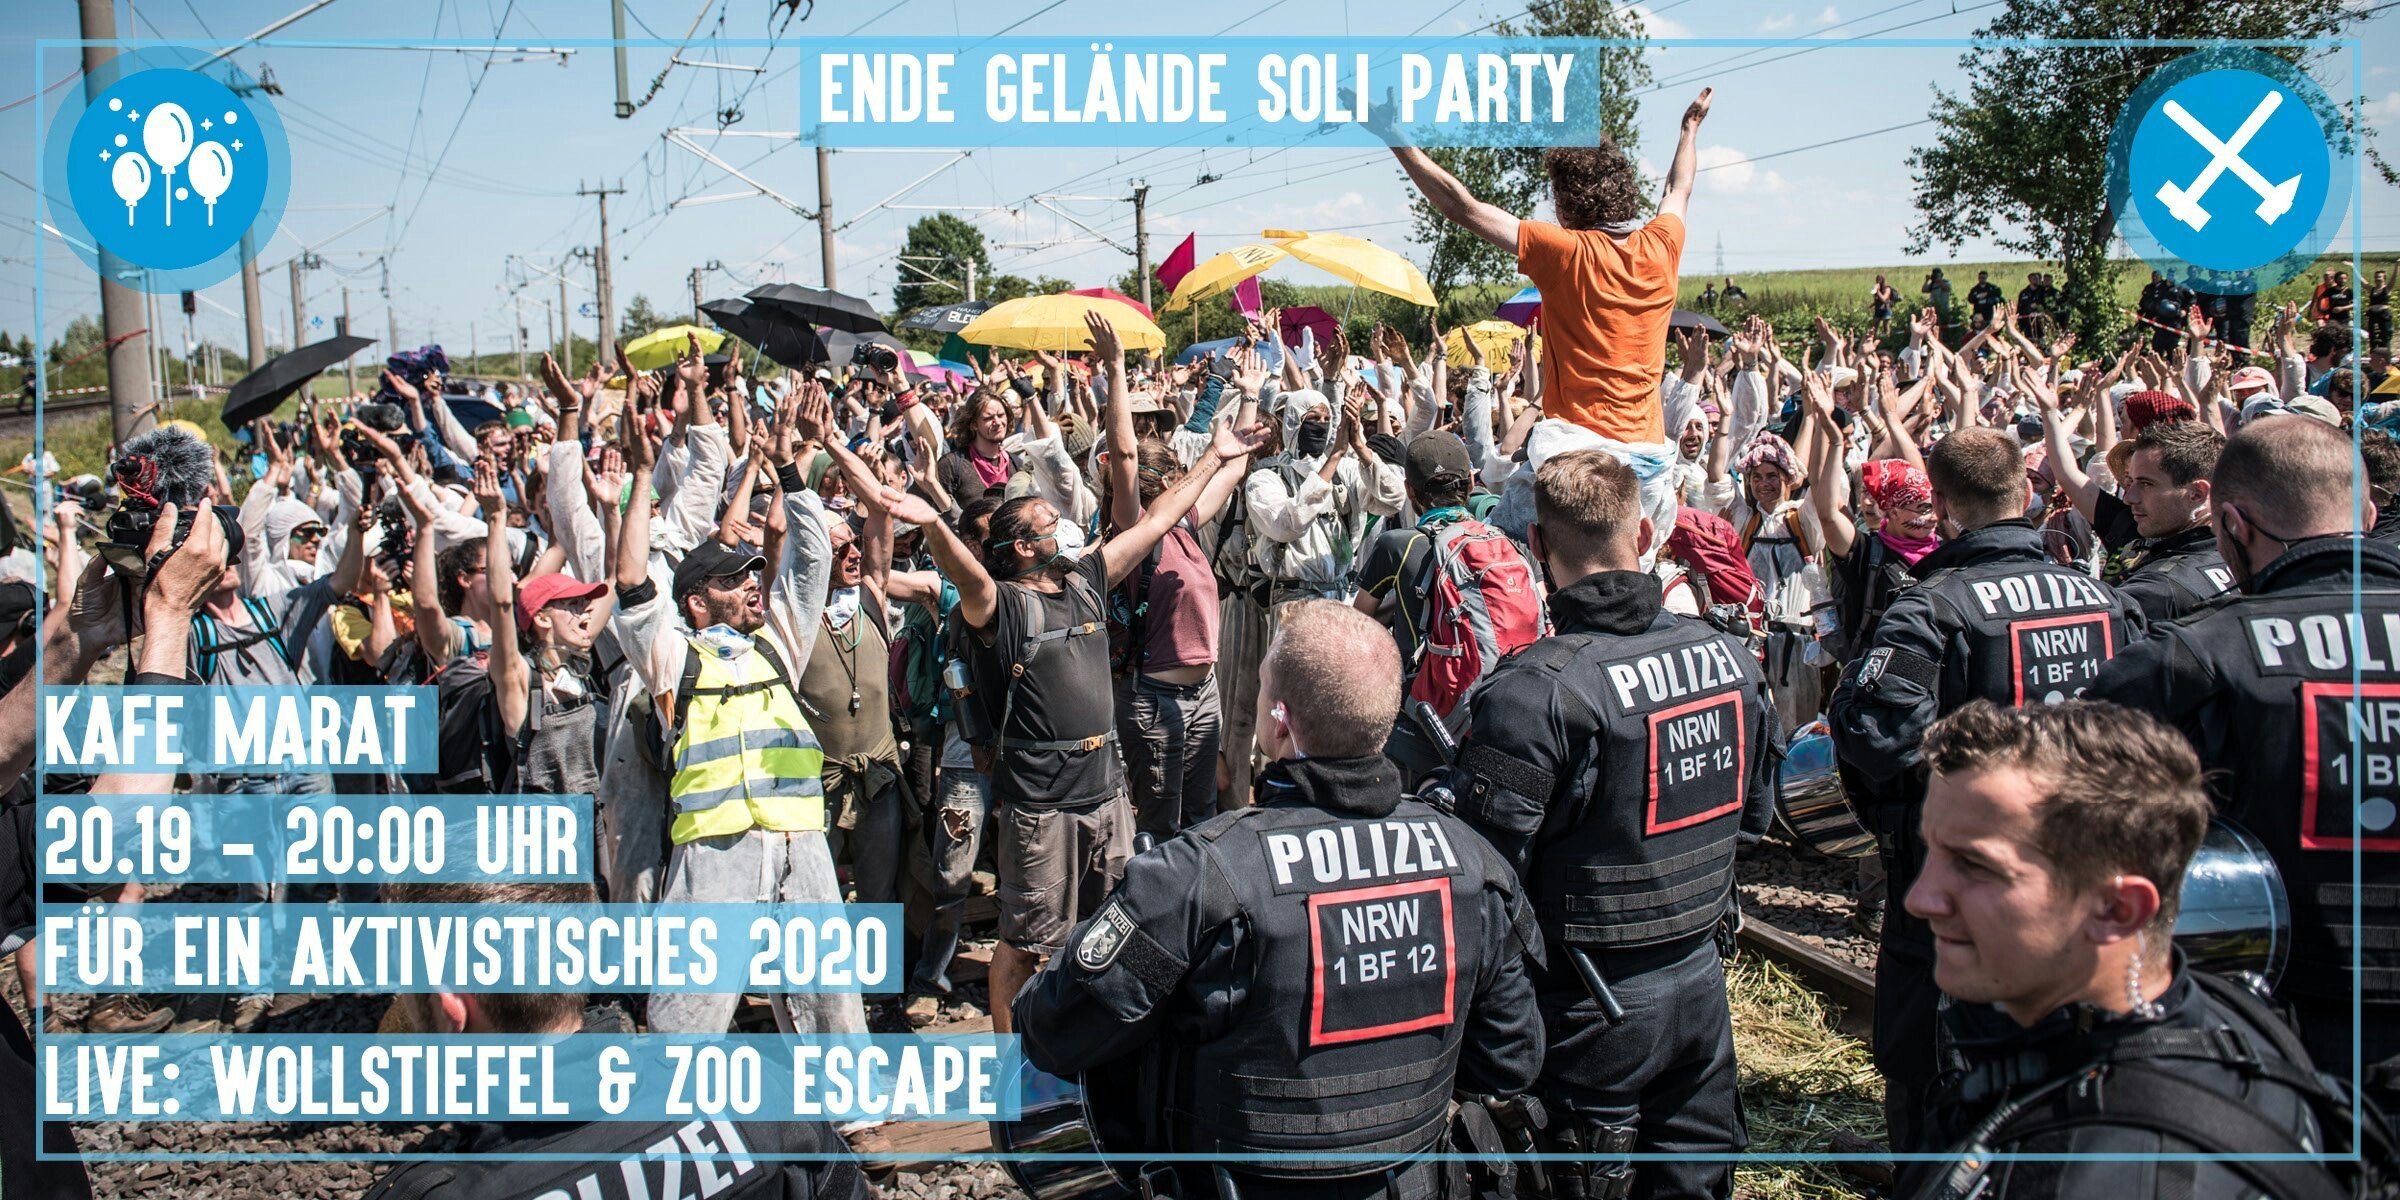 Freitagskafe: Ende Gelände Party mit Zoo Escape und Wollstiefel